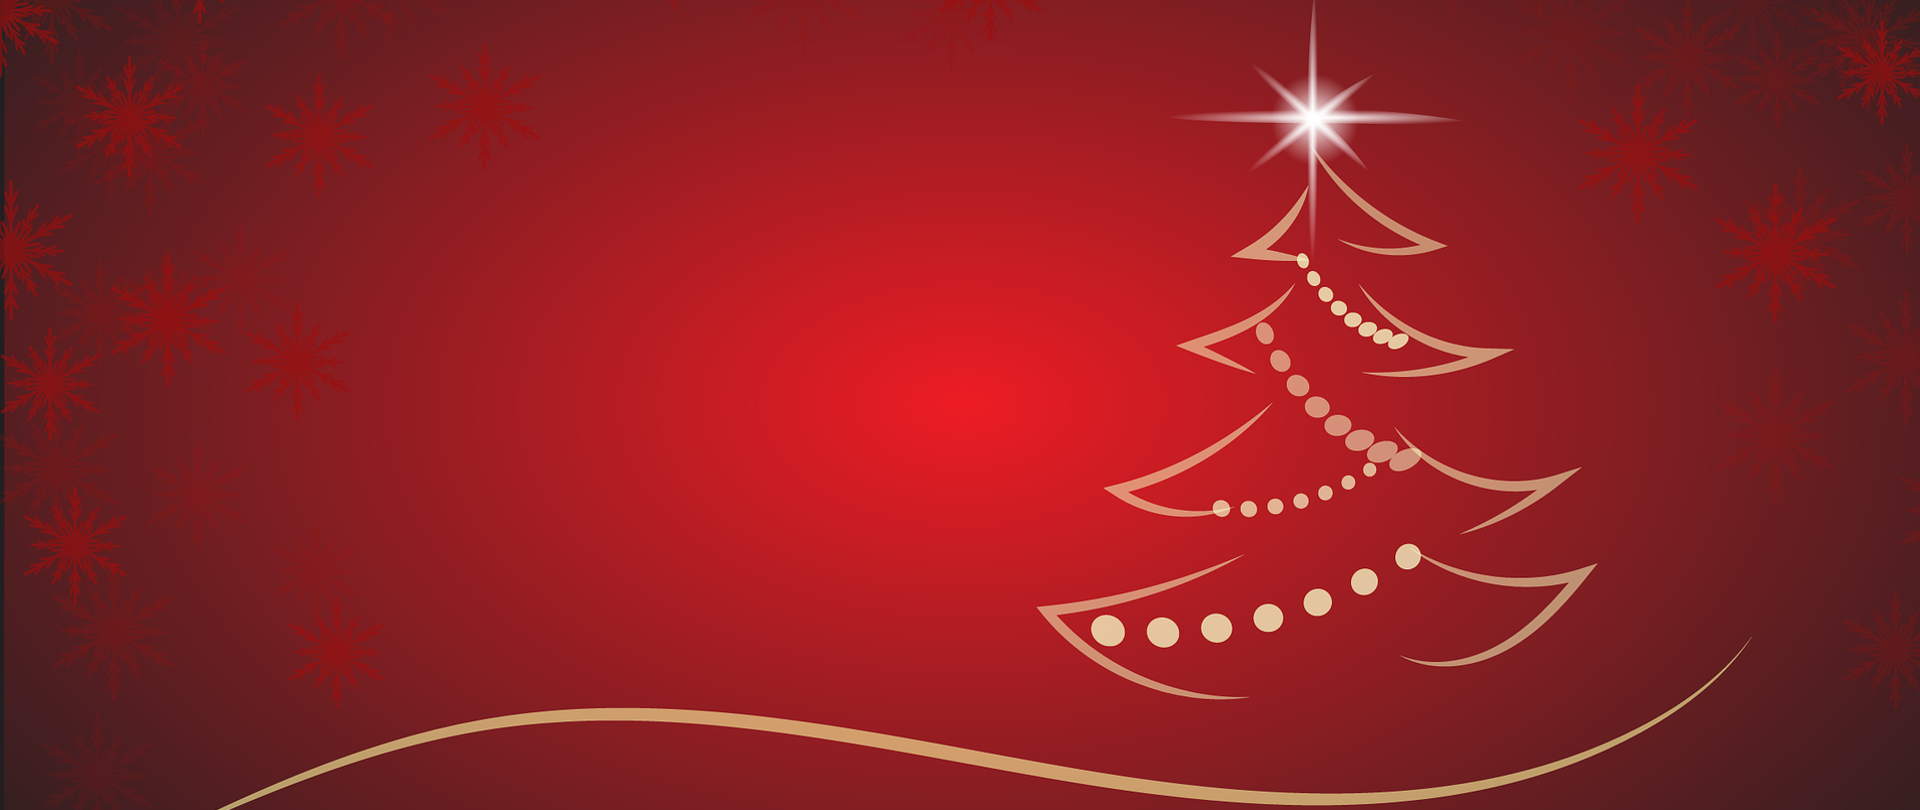 Zdjęcie przedstawia grafikę świąteczną - kontur choinki na czerwonym tle.